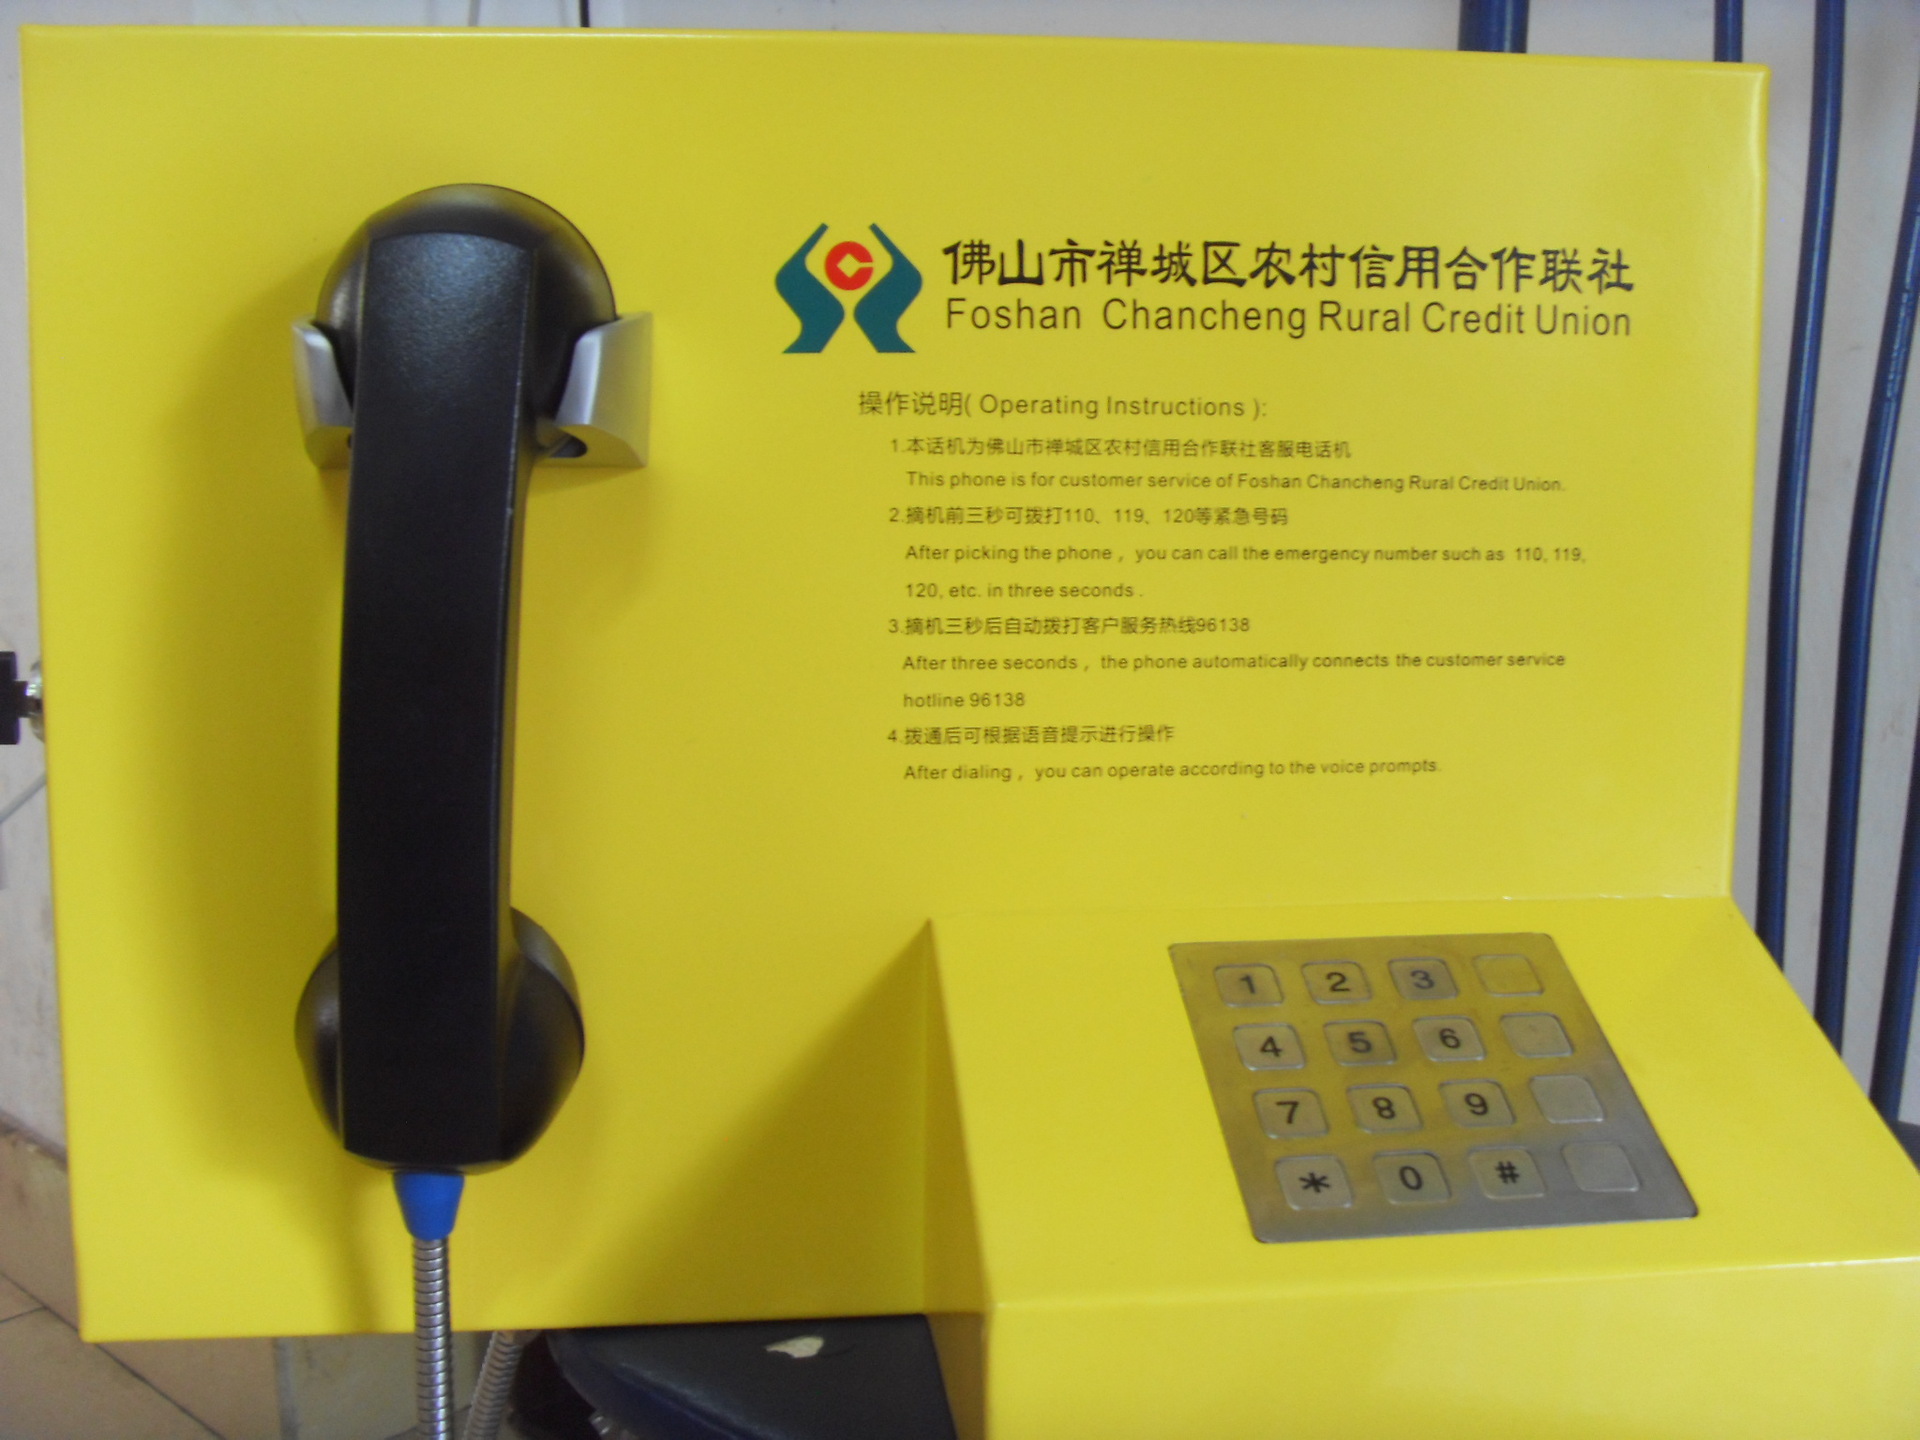 【佛山农村商业银行96138客服专线应急电话机